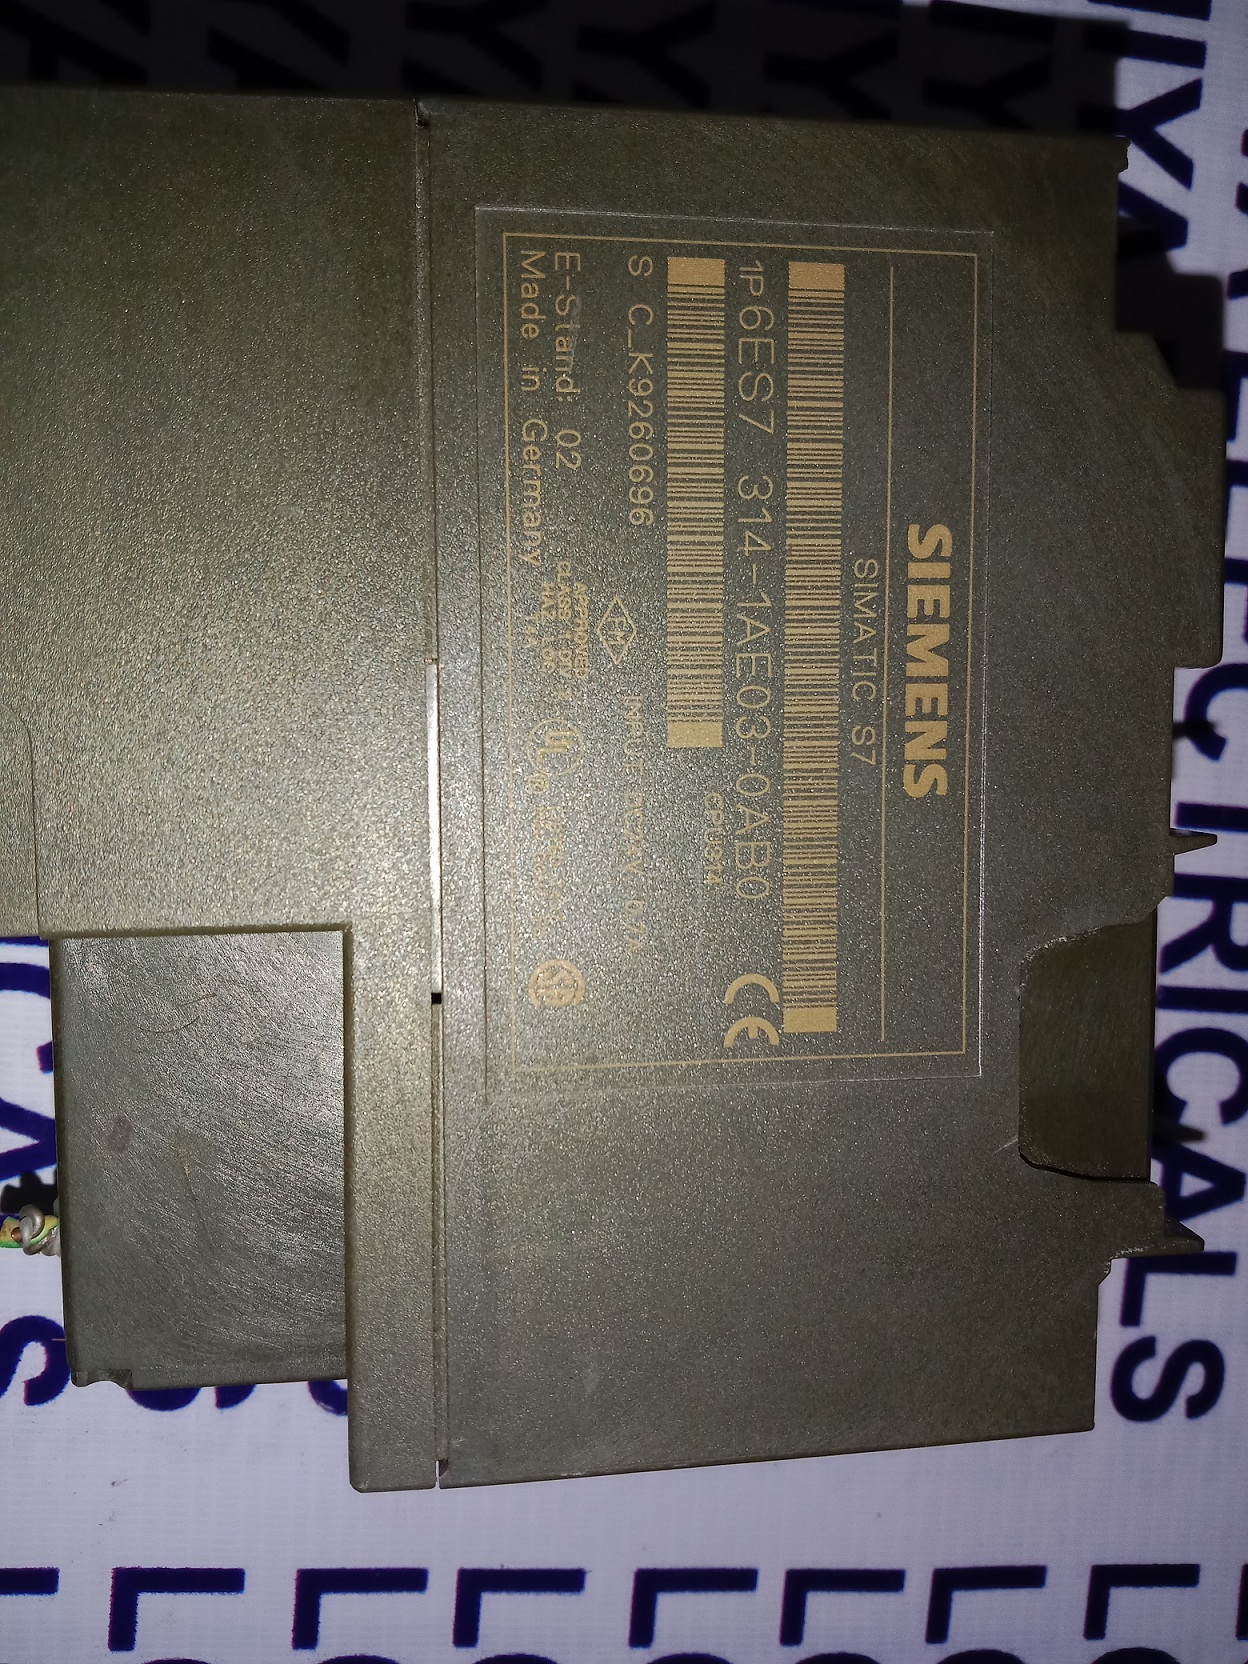 SIEMENS CPU MODULE 6ES7 314-1AE03-0AB0